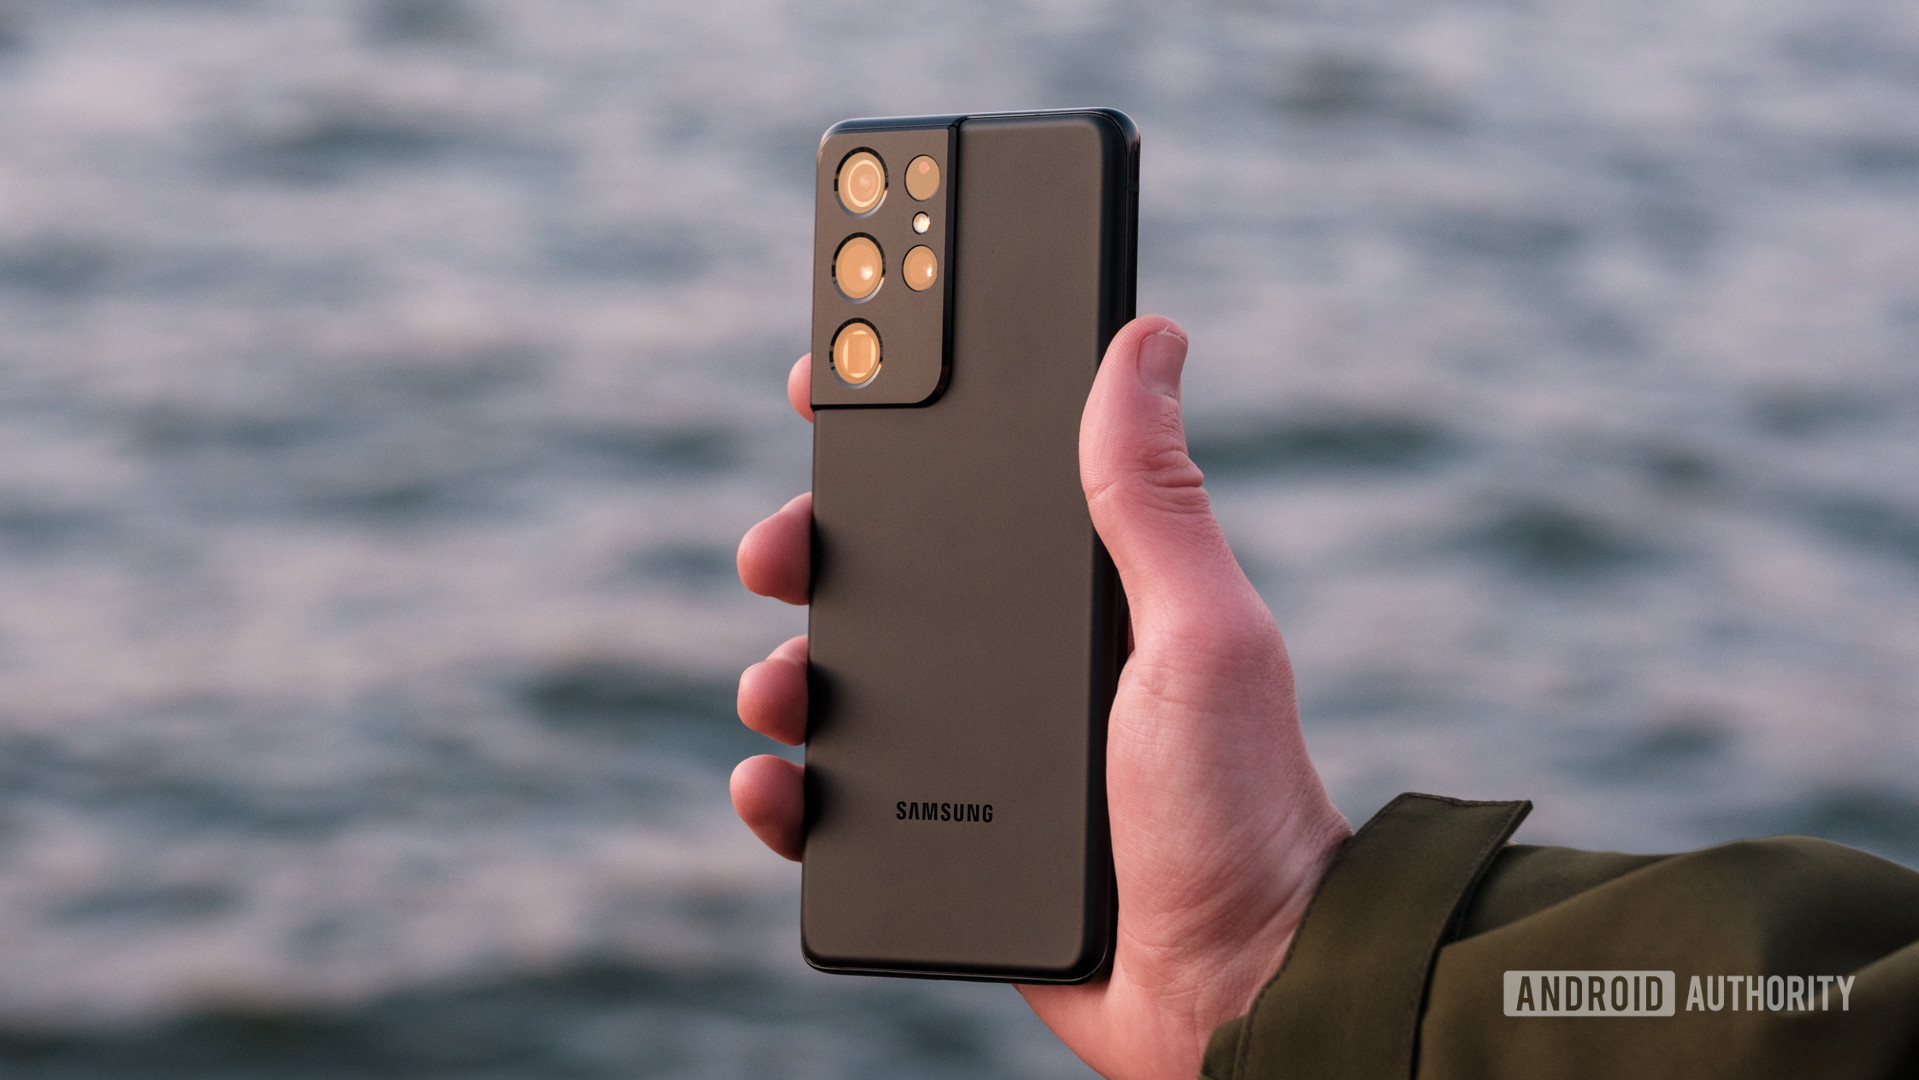 Samsung Galaxy S21 Ultra (SM-G998N 512GB) - Specs